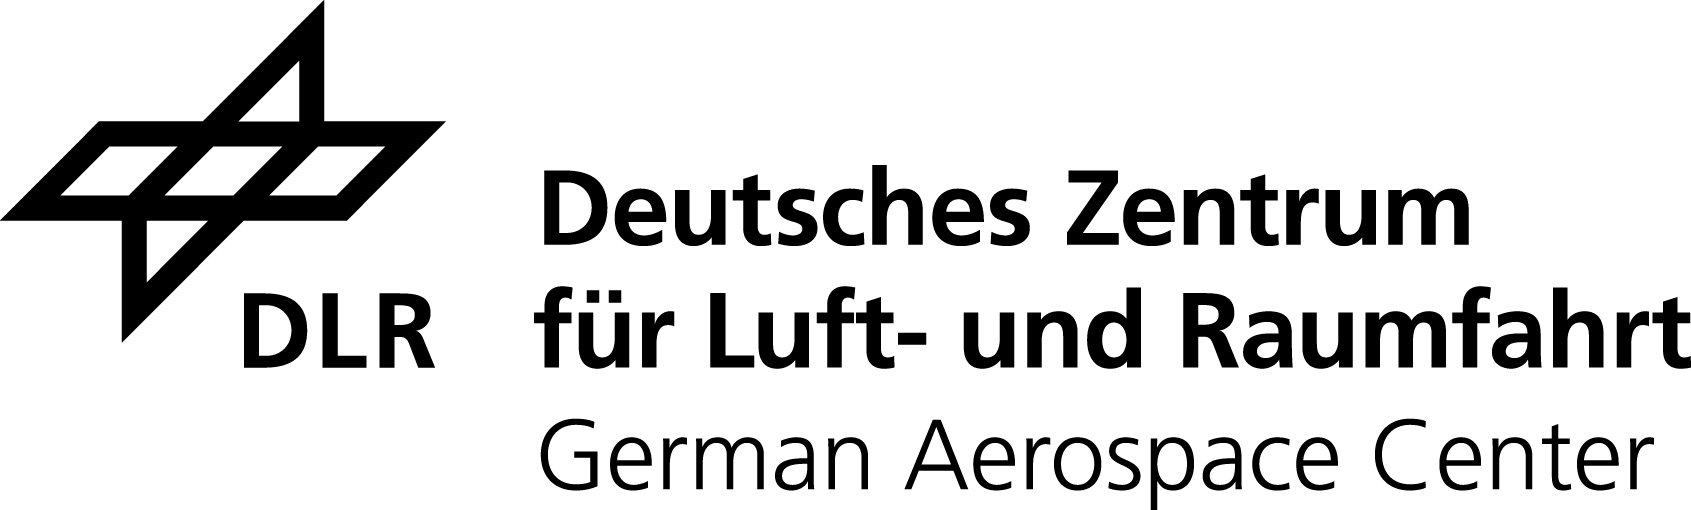 DLR_Logo_engl_schwarz